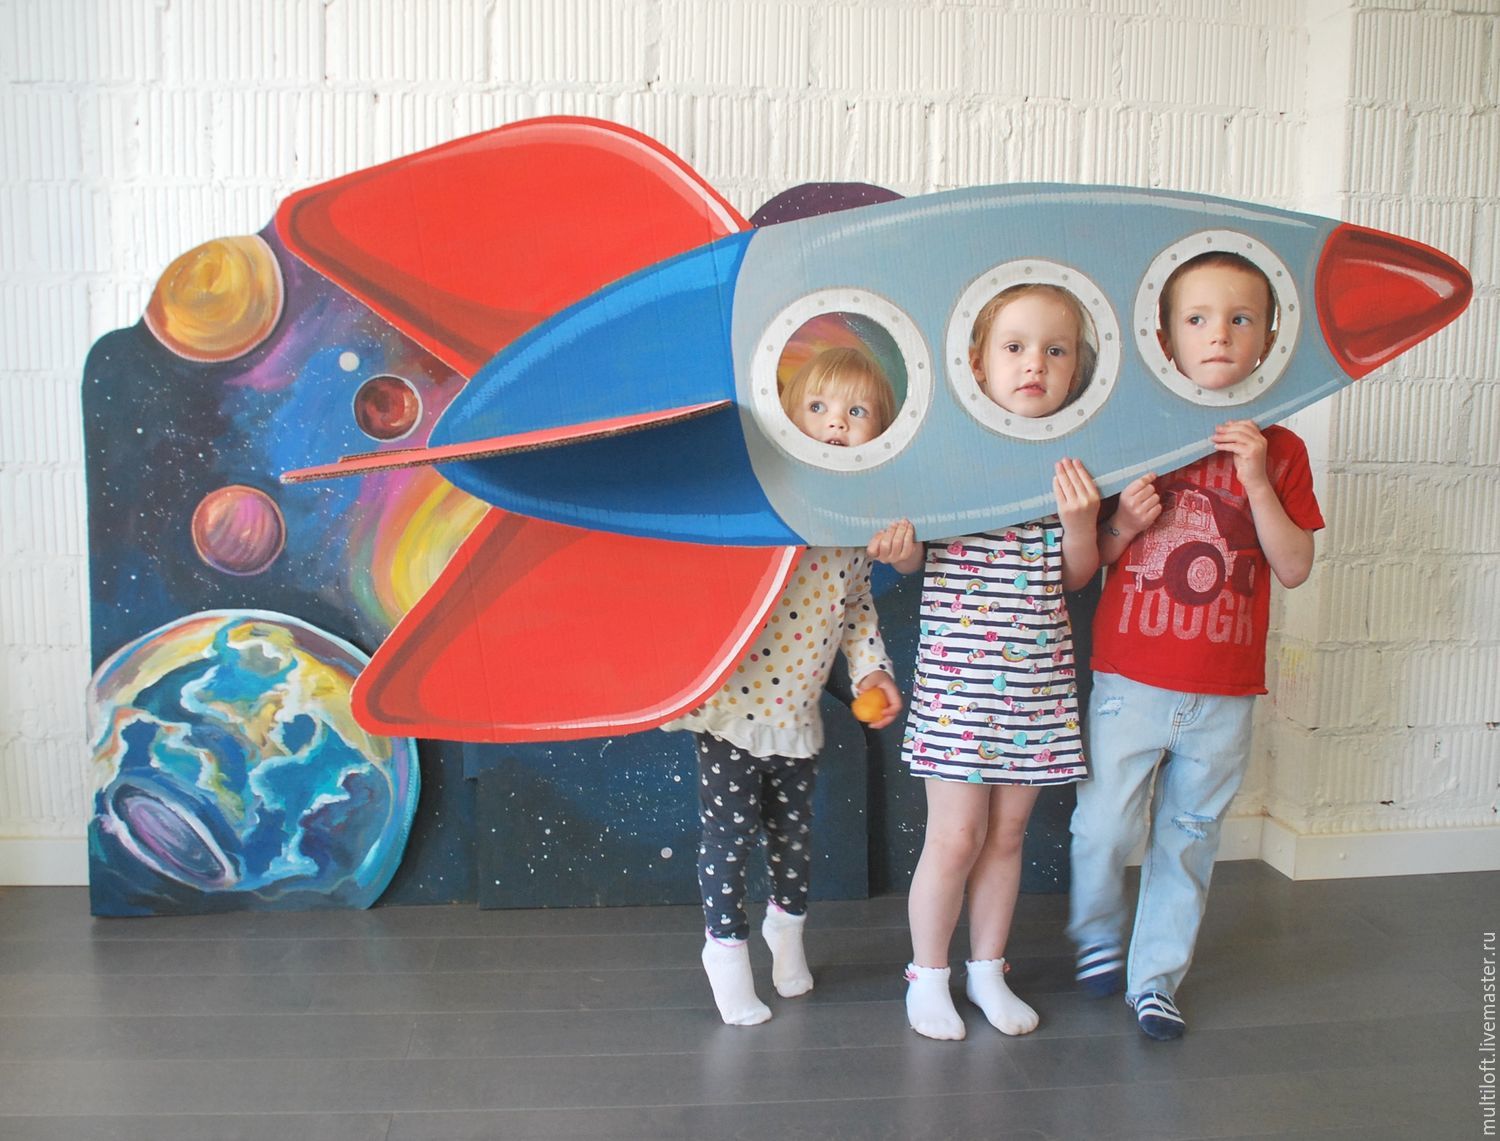 Оформление к дню космонавтики в детском саду. Фотозоны ко Дню космонавтики. День космонавтики для детей в детском саду фотозона. Ракета для фотозоны для детей. Космическая фотозона в детском саду.